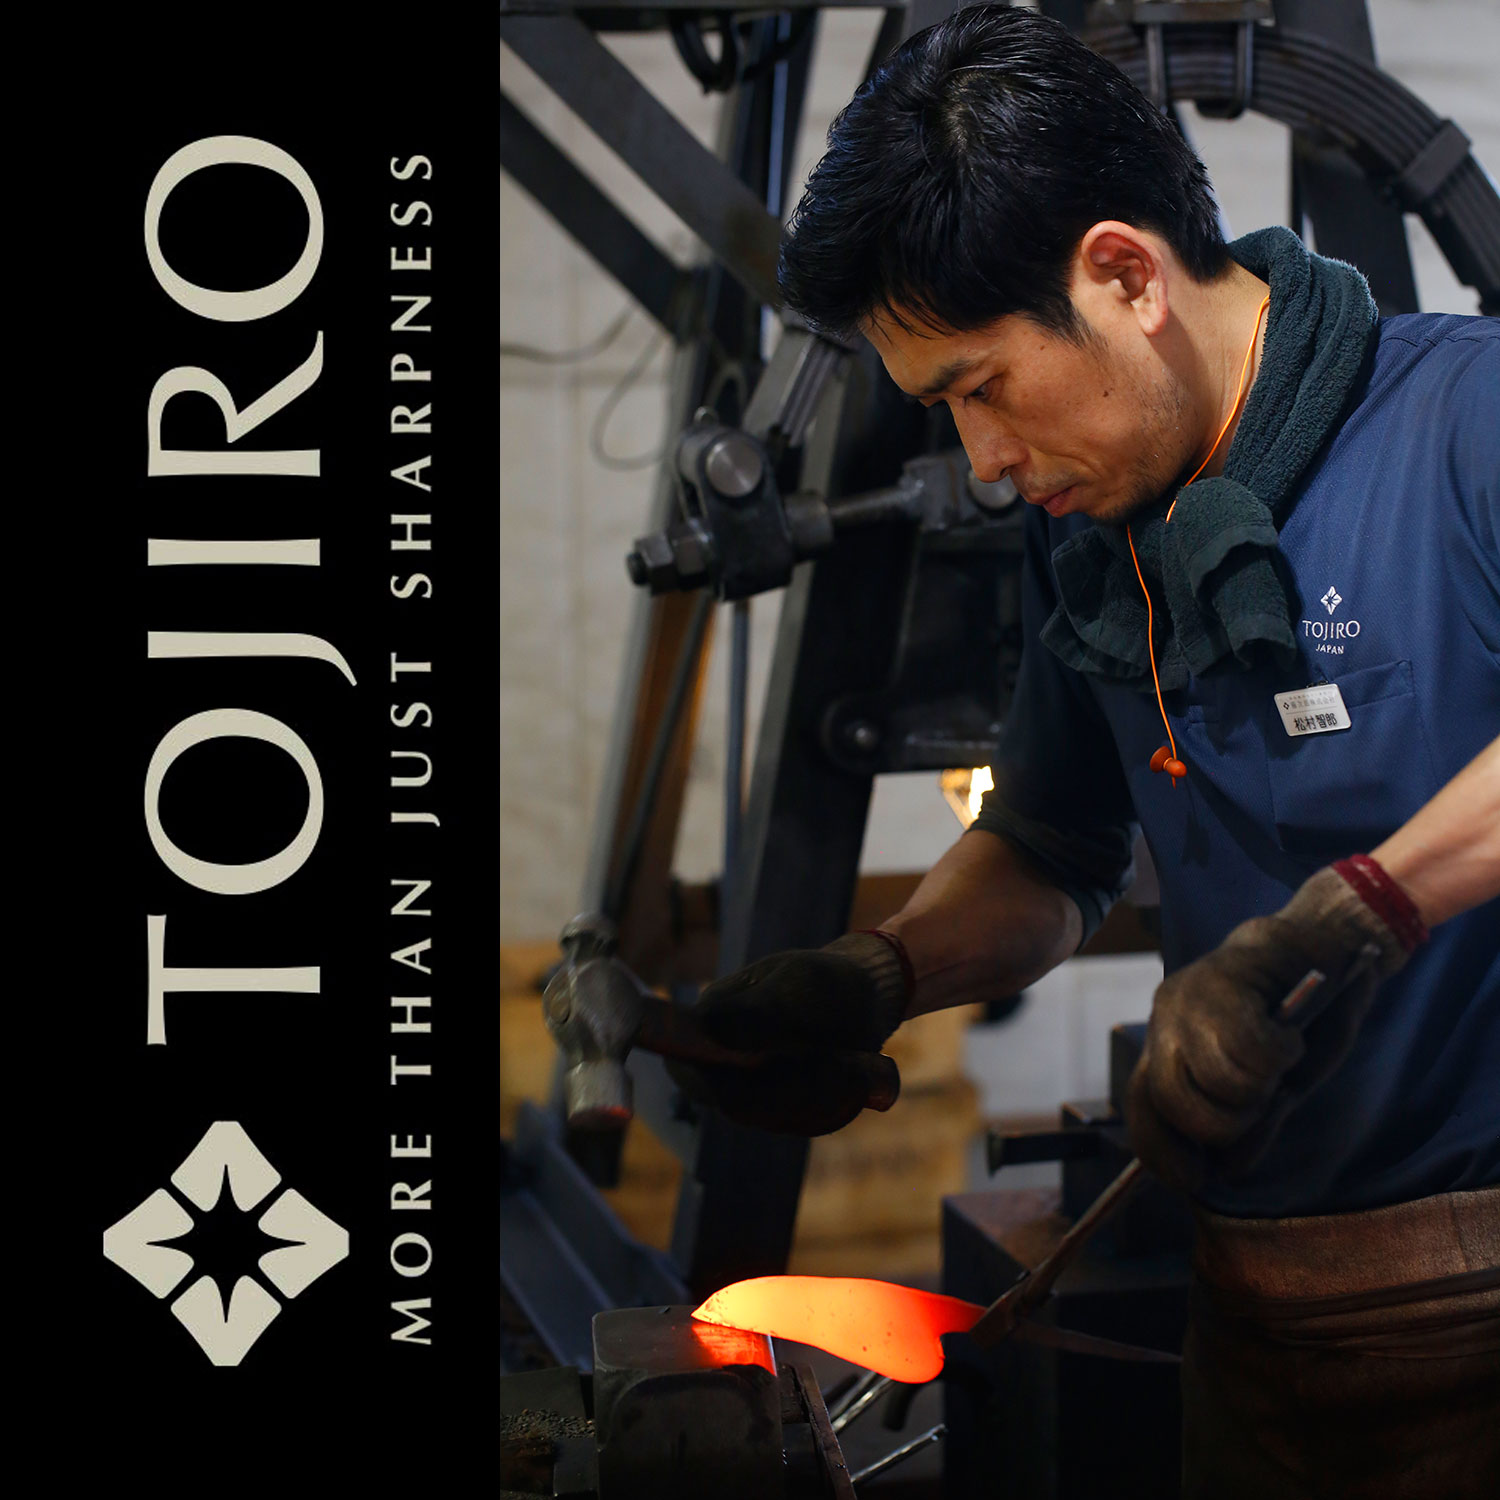 Как делают ножи Tojiro? Посещение фабрики ножей Тоджиро